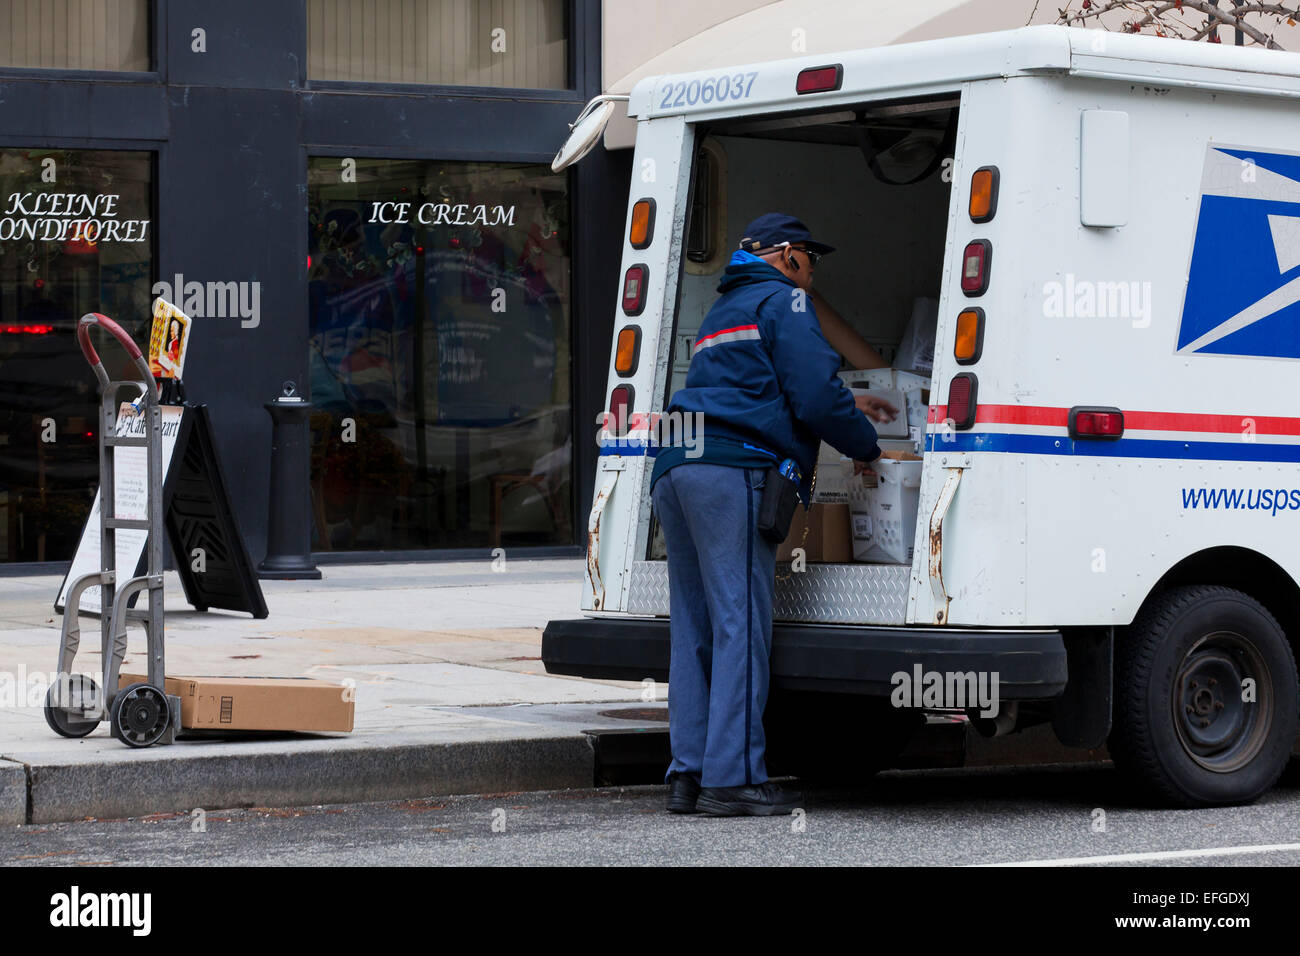 Mailman nous travailler derrière des camions de livraison - USA Banque D'Images